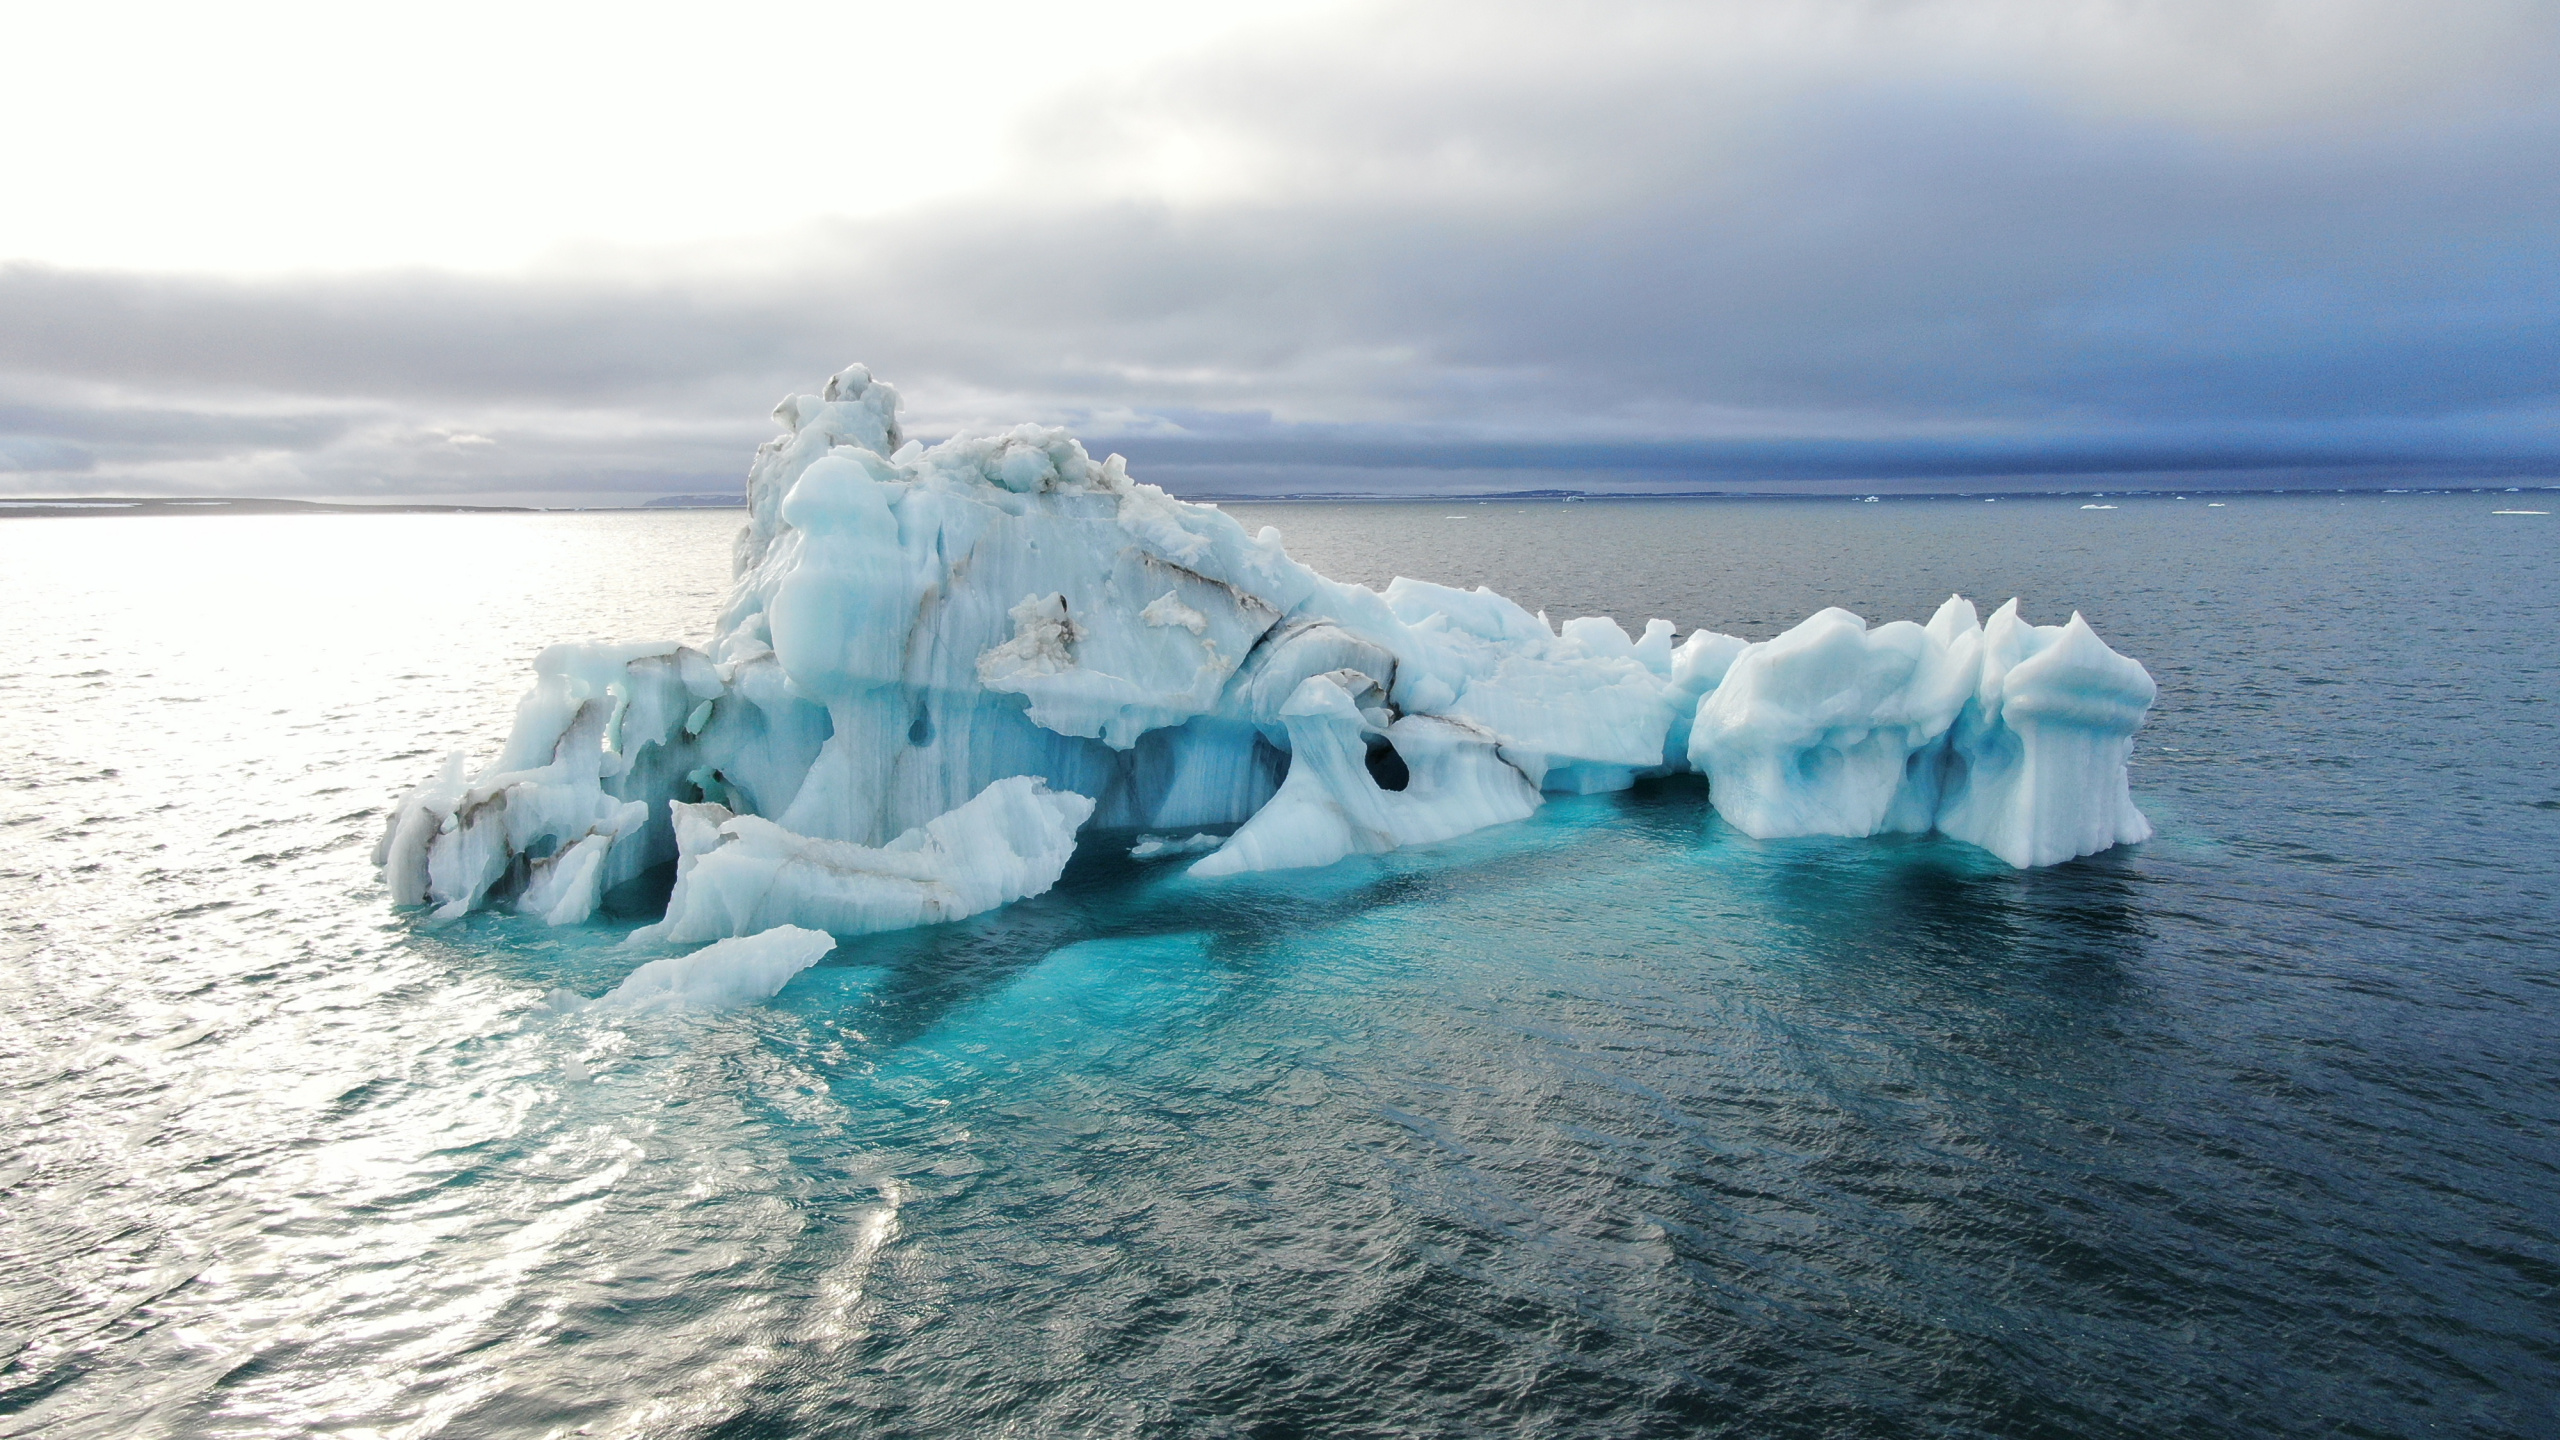 Дрон поможет вблизи рассмотреть айсберг, похожий на морское чудовище. Фото: Александра Барымова